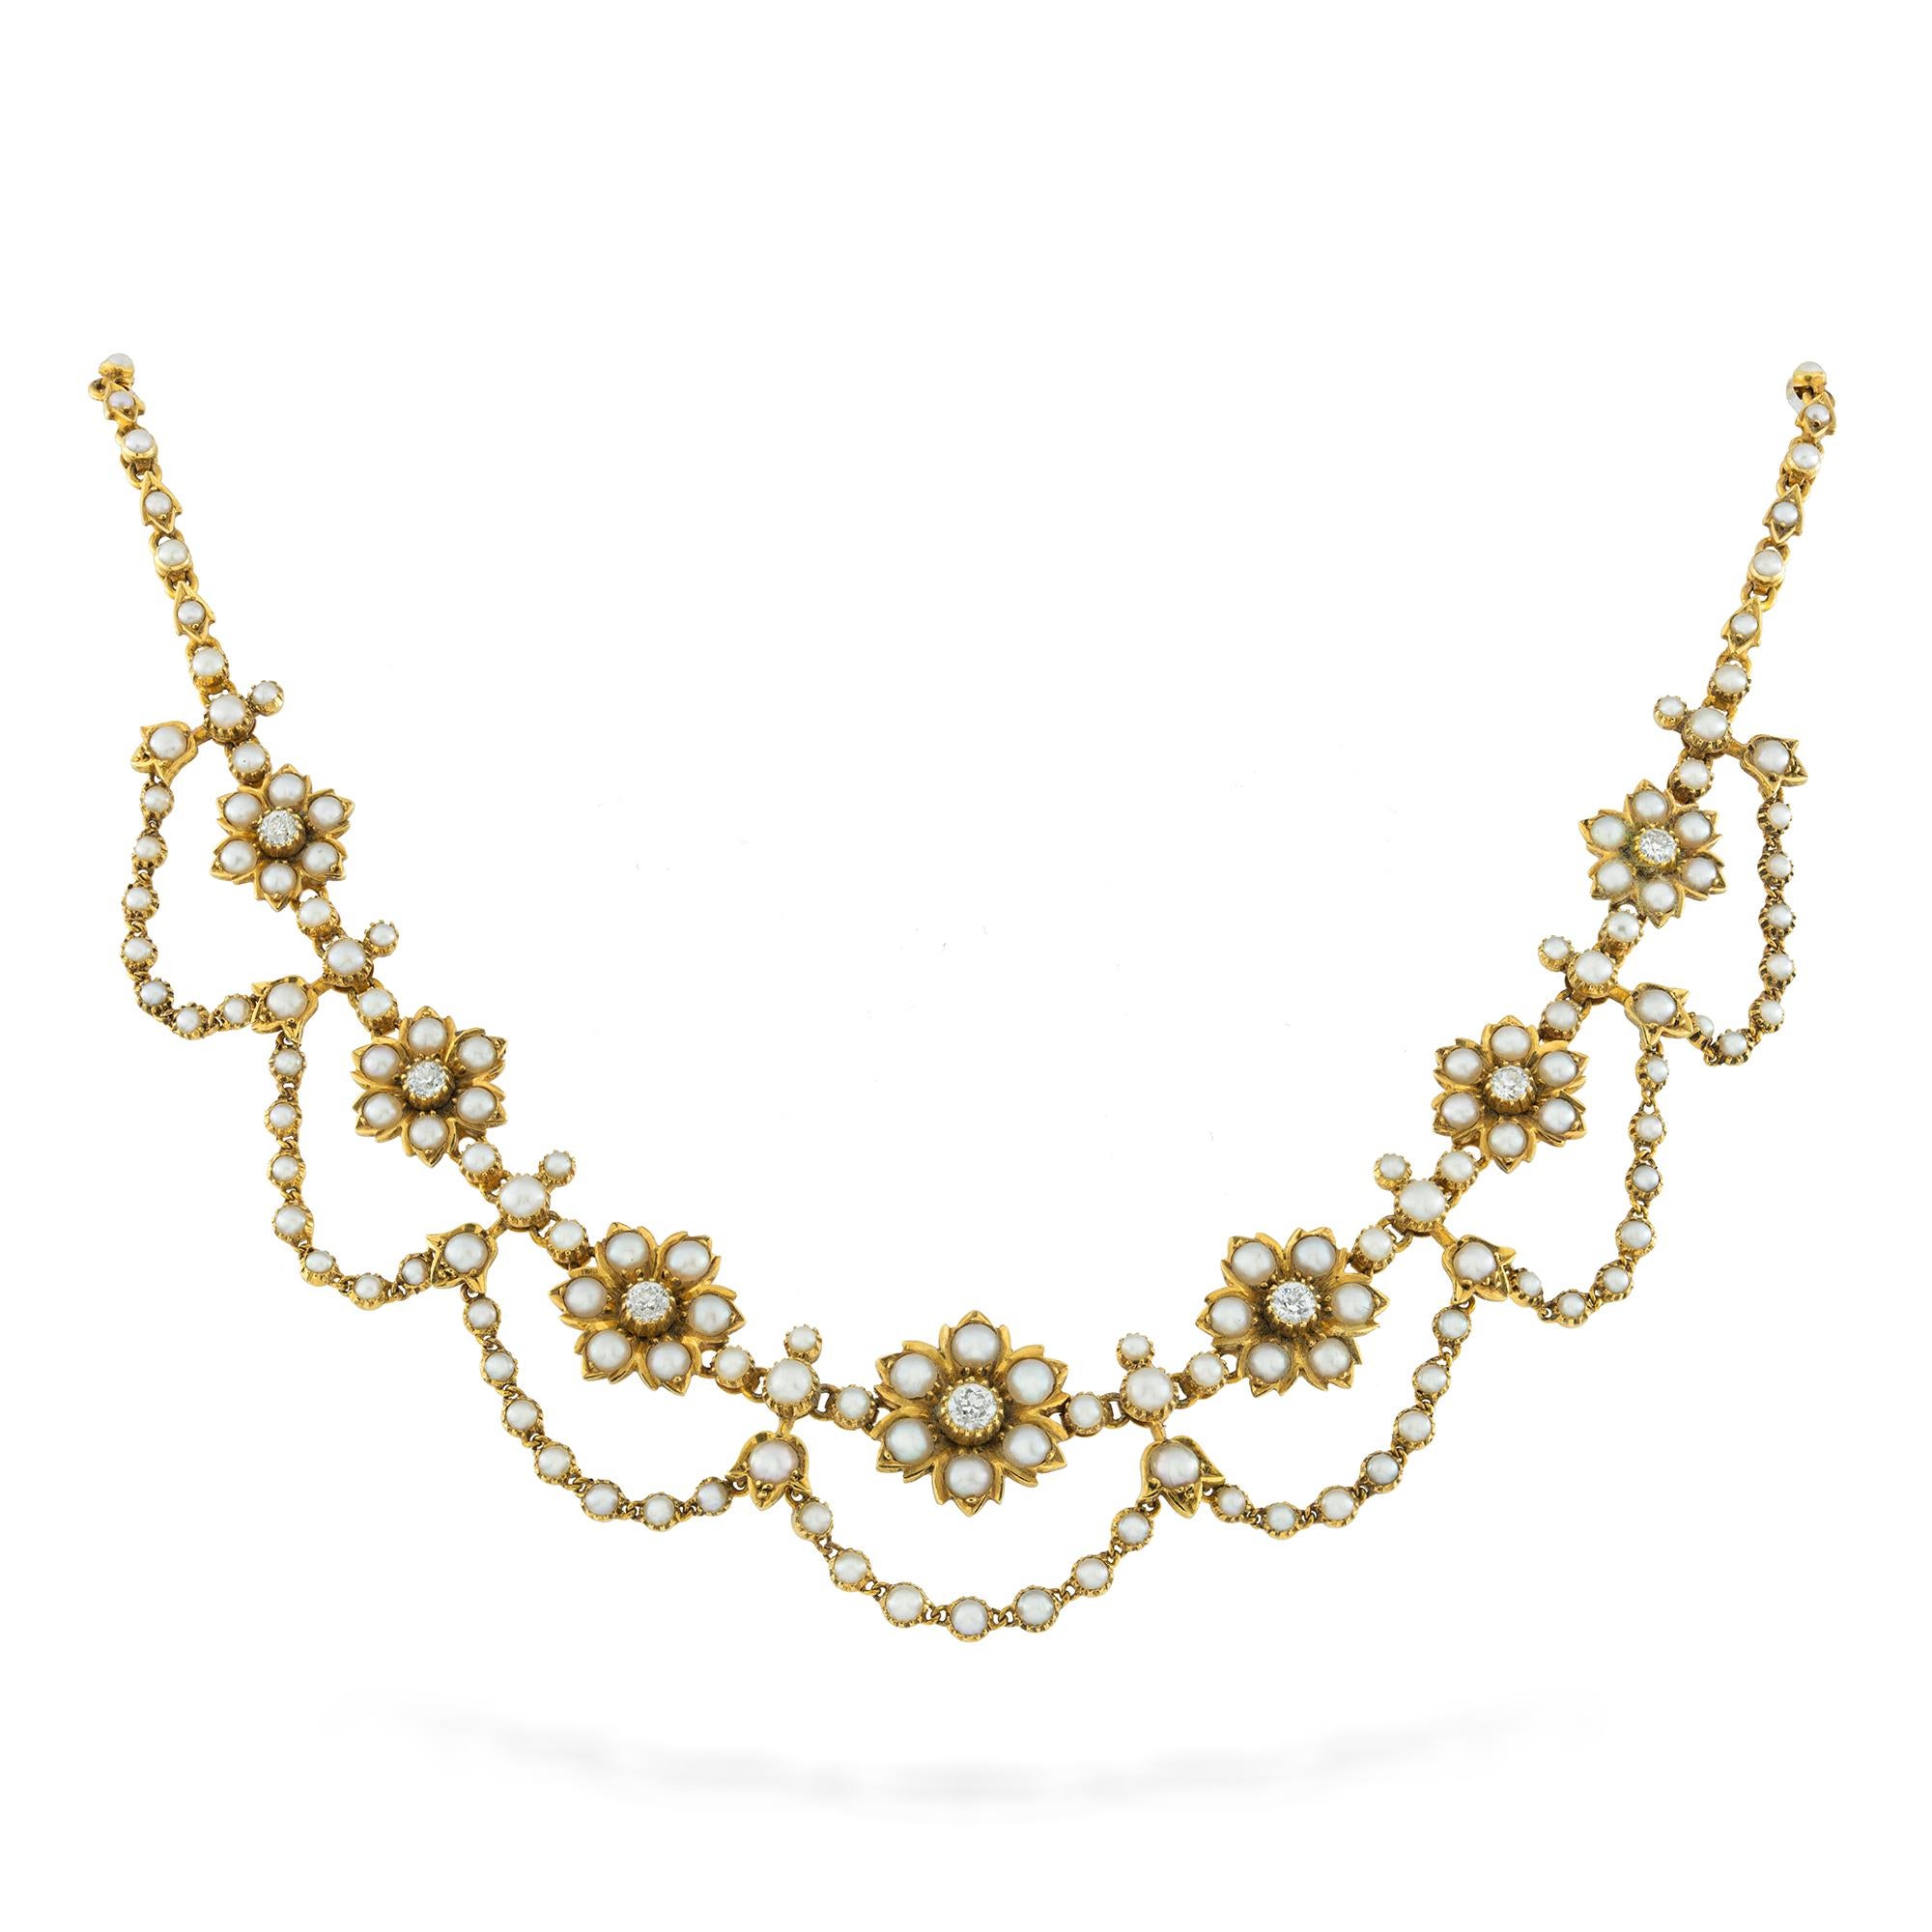 Eine spätviktorianische Perlen-, Diamant- und Goldkette, bestehend aus sieben abgestuften Blütenköpfen, jeder mit einem altgeschliffenen Diamanten, umgeben von sechs perlenbesetzten Blütenblättern, die Blütenköpfe zwischen acht perlenbesetzten